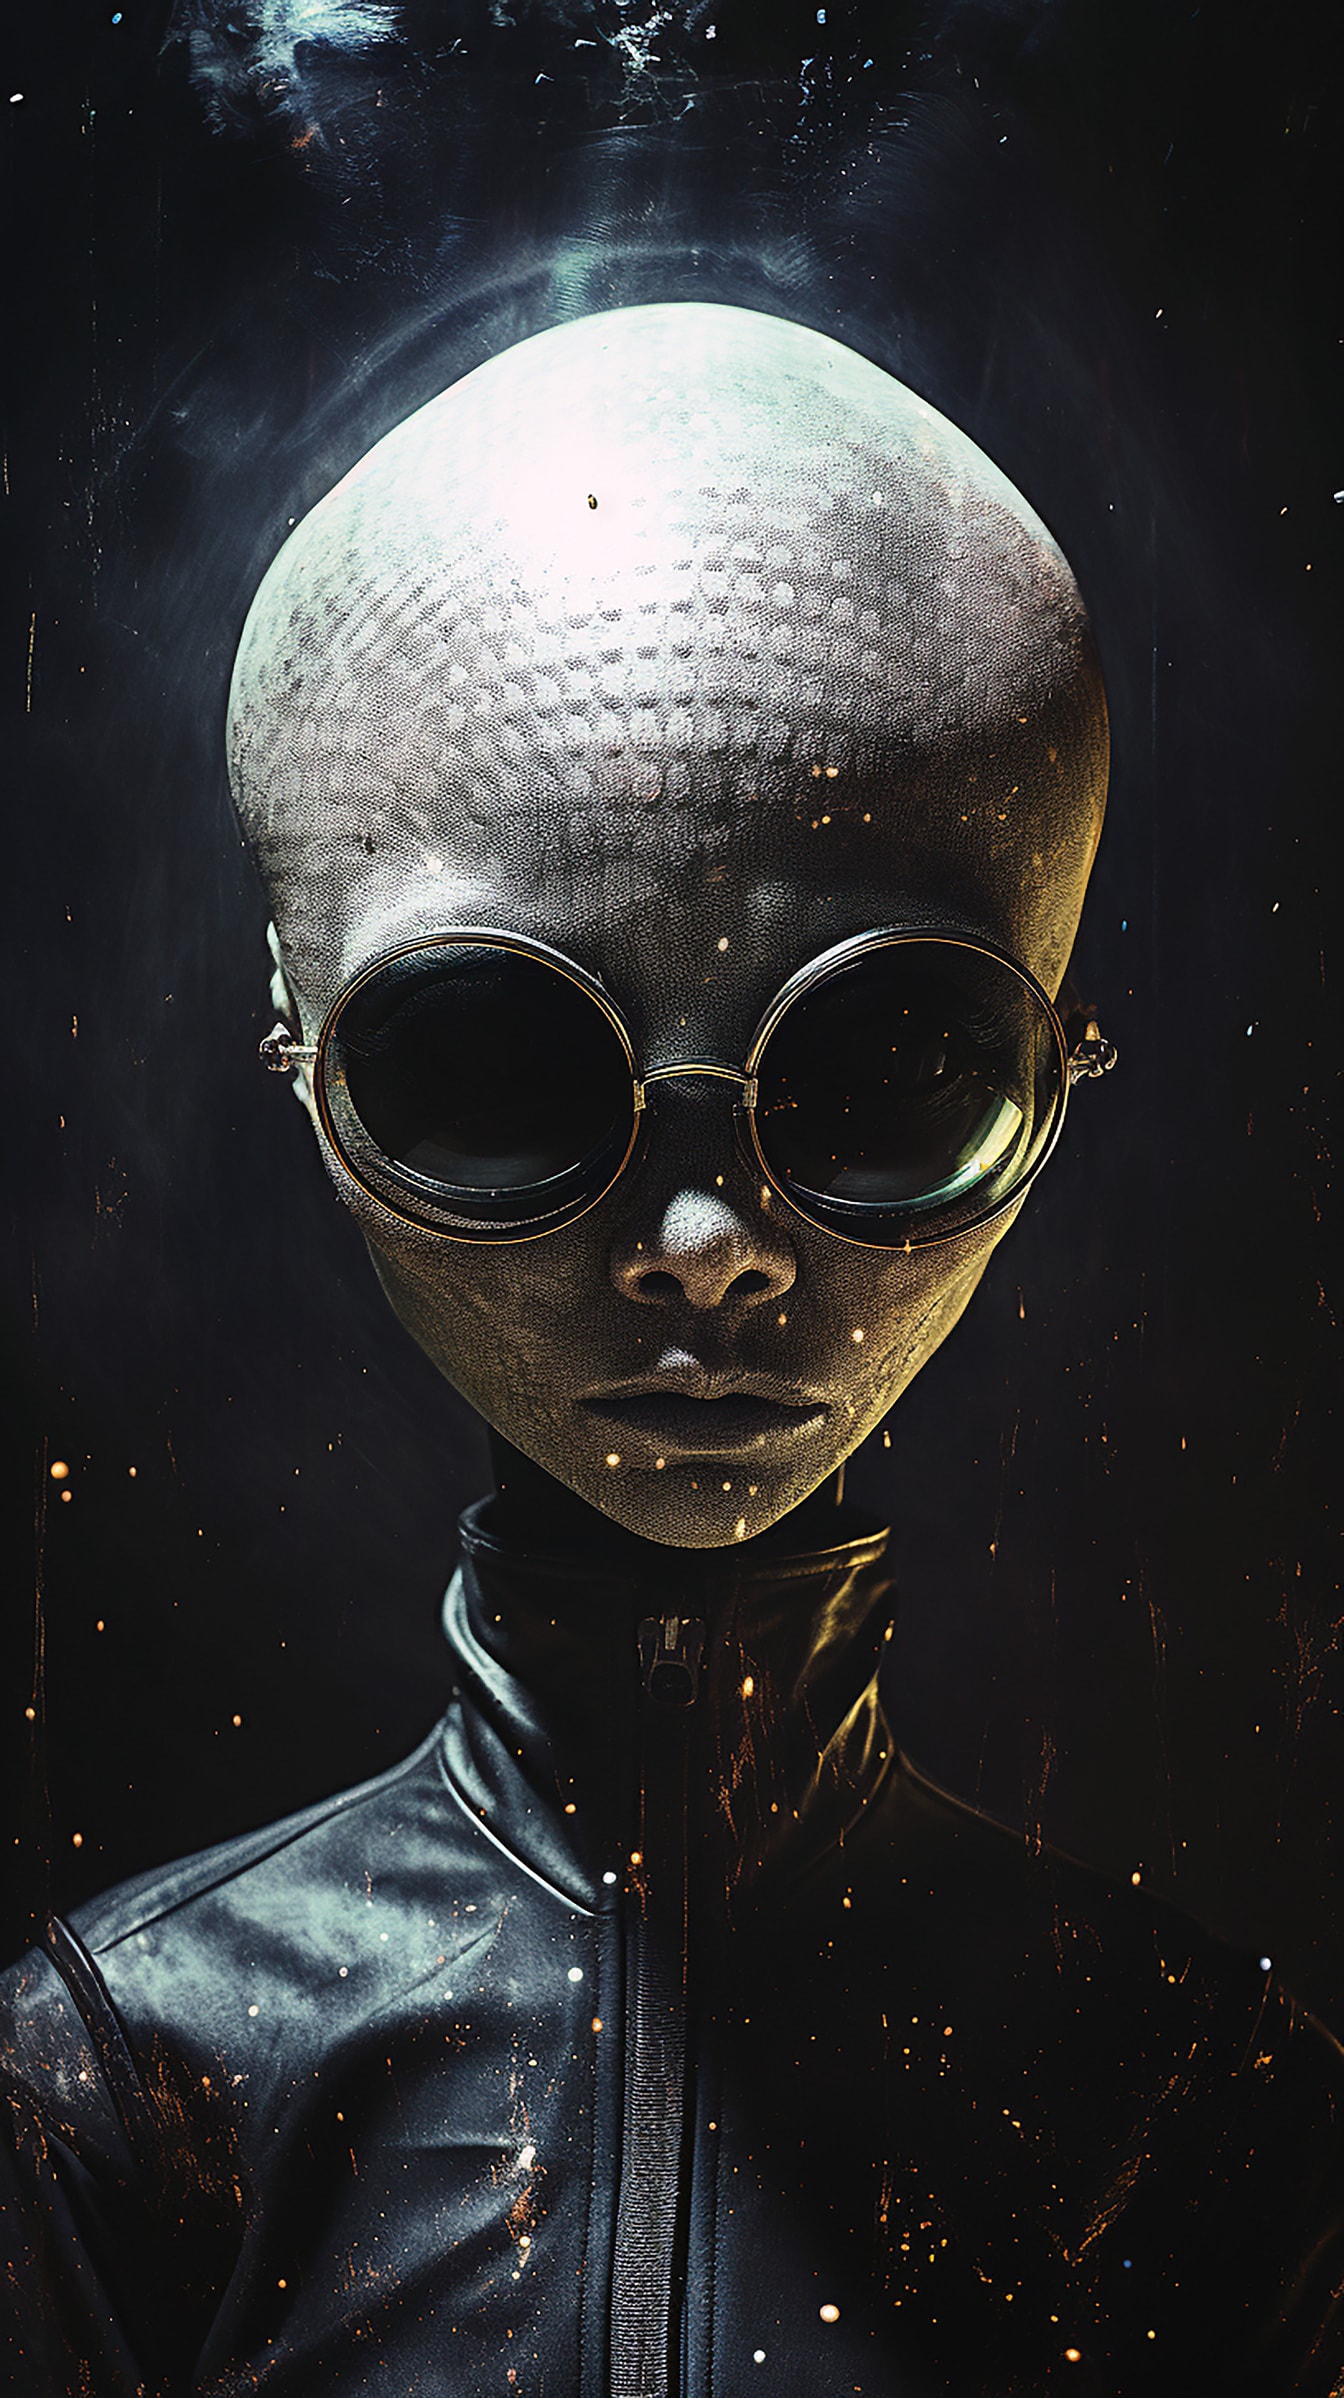 검은 안경과 가죽 재킷을 입은 인간형 외계인 초상화